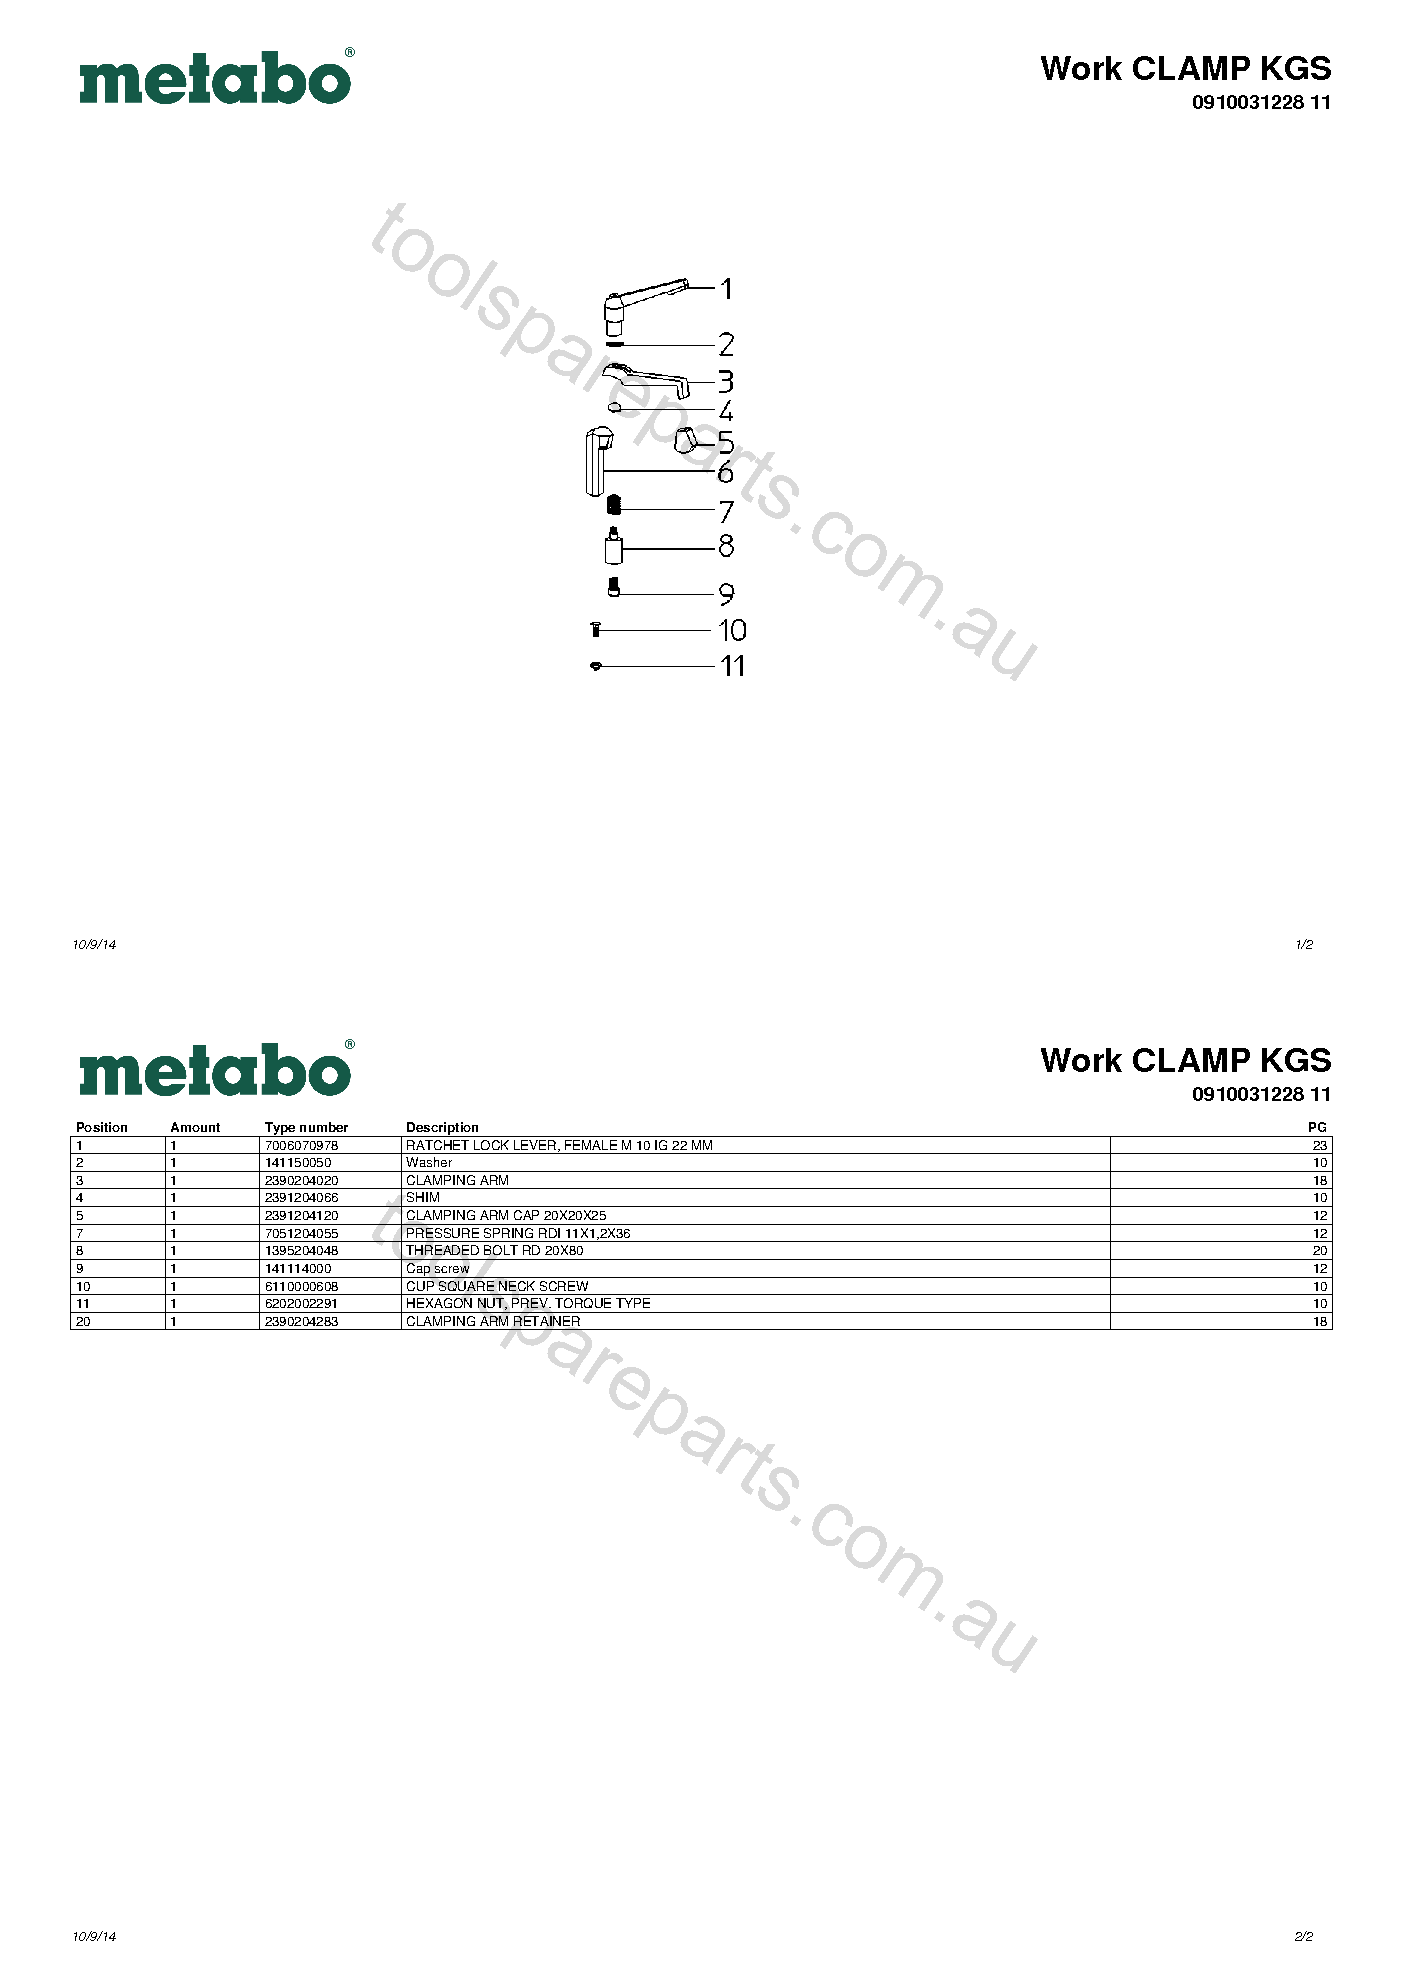 Metabo Work CLAMP KGS 0910031228 11  Diagram 1